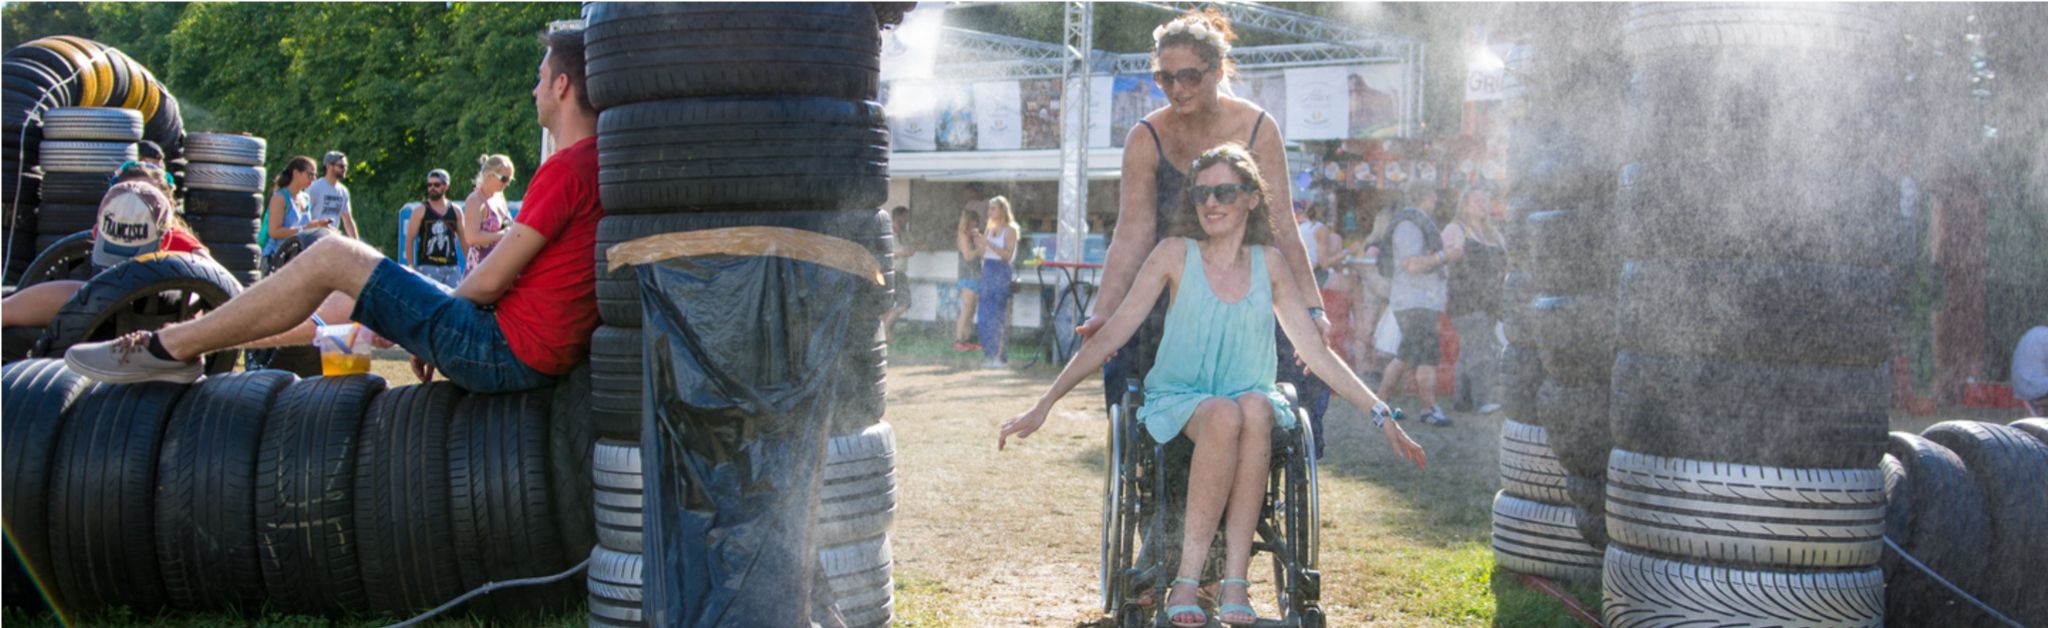 Zwei Frauen auf einem Festival, eine von ihnen sitzt in einem Rollstuhl